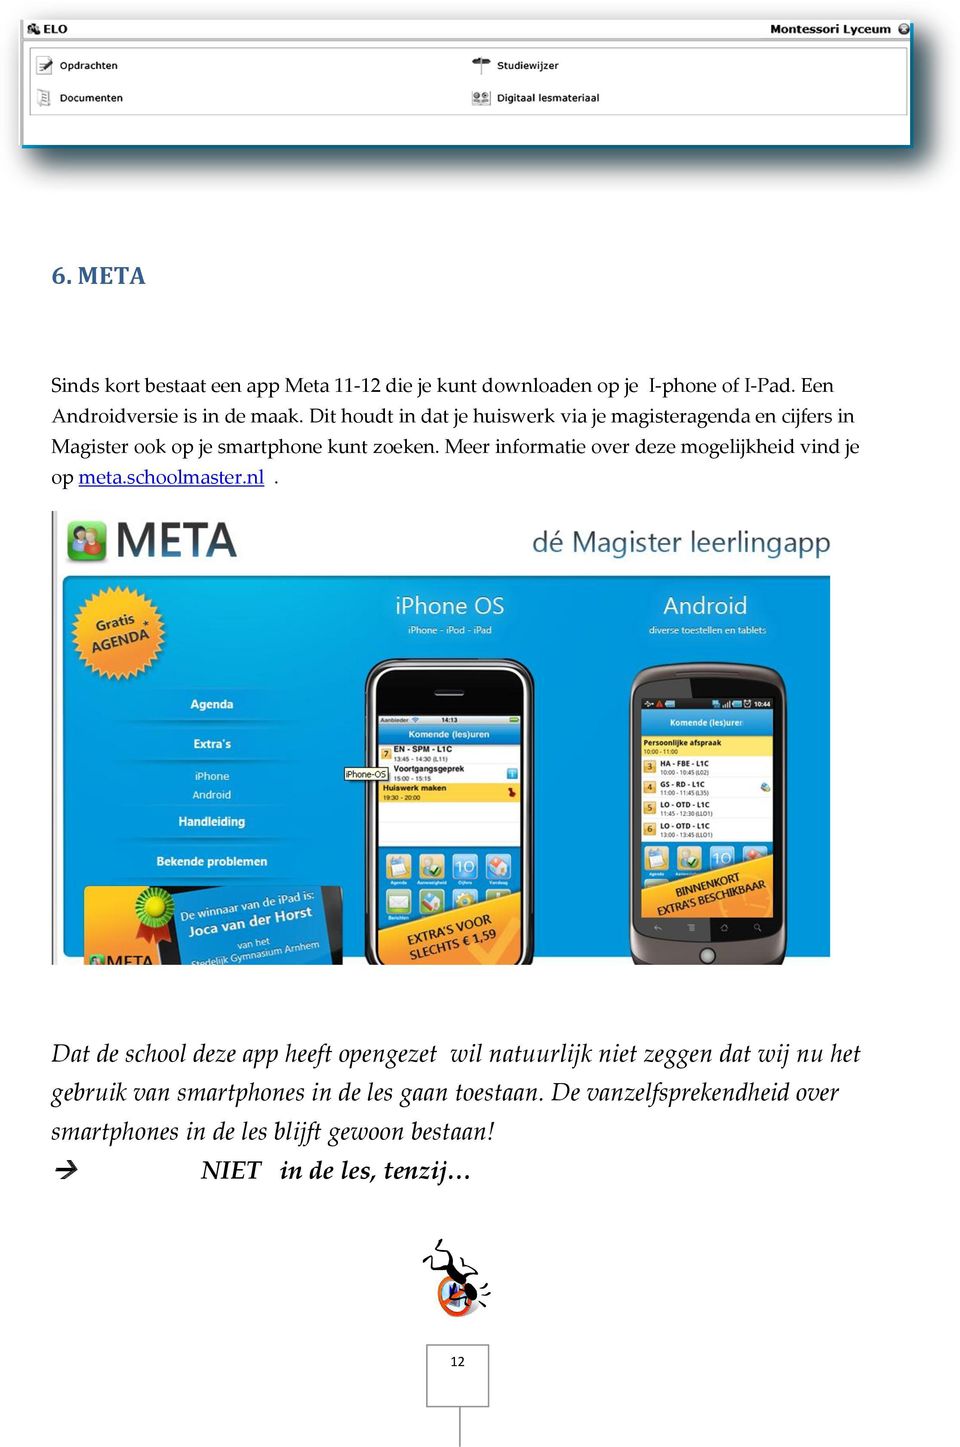 Meer informatie over deze mogelijkheid vind je op meta.schoolmaster.nl.